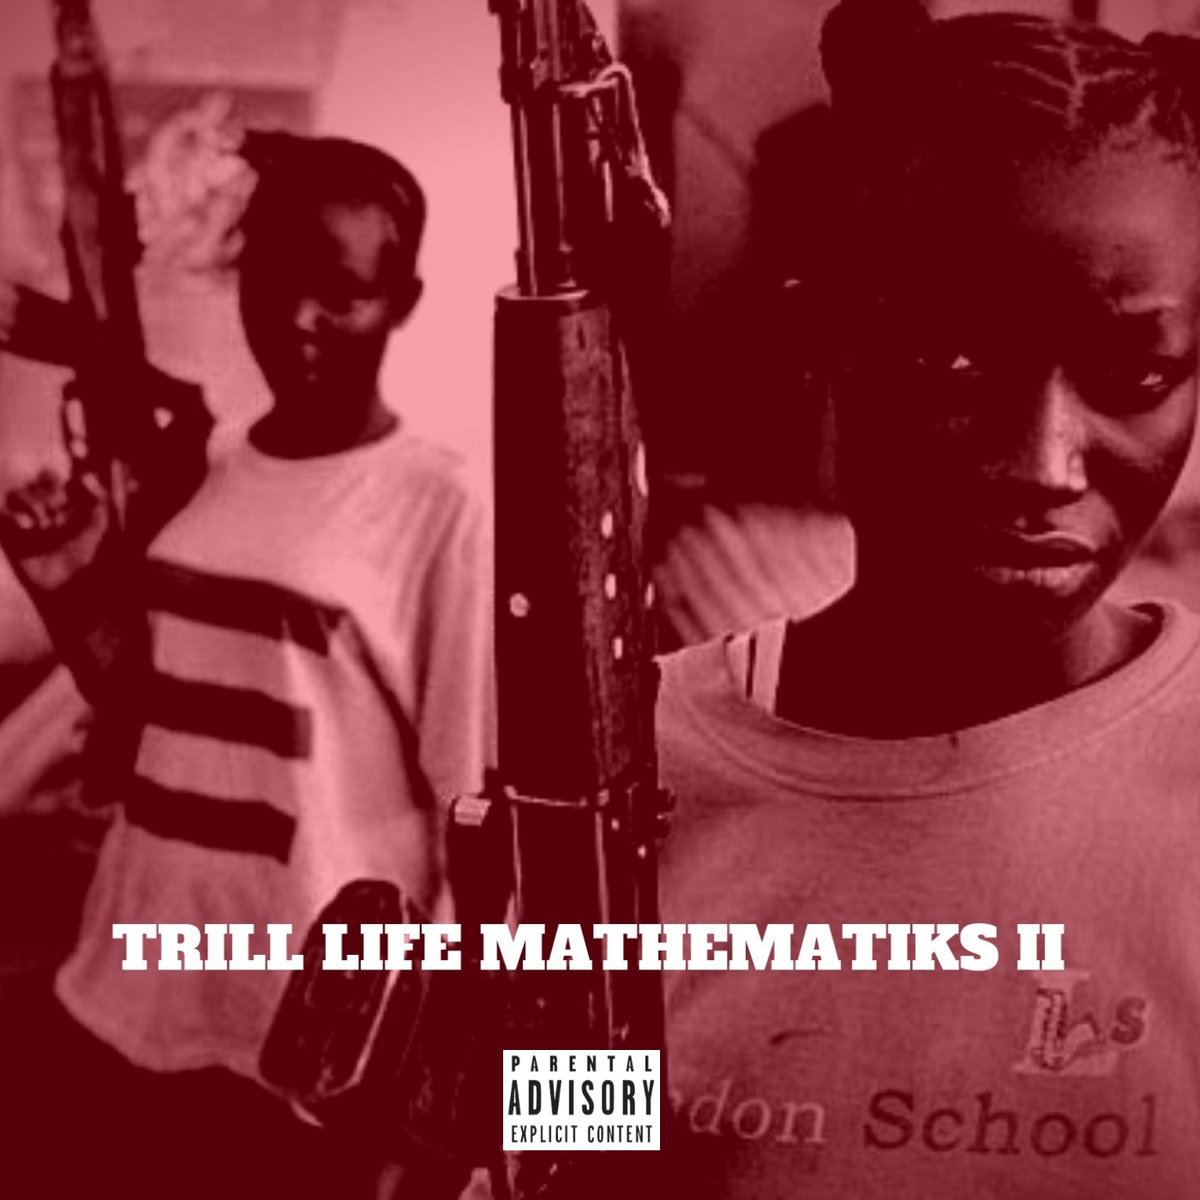 Trill_life_mathematiks_ii